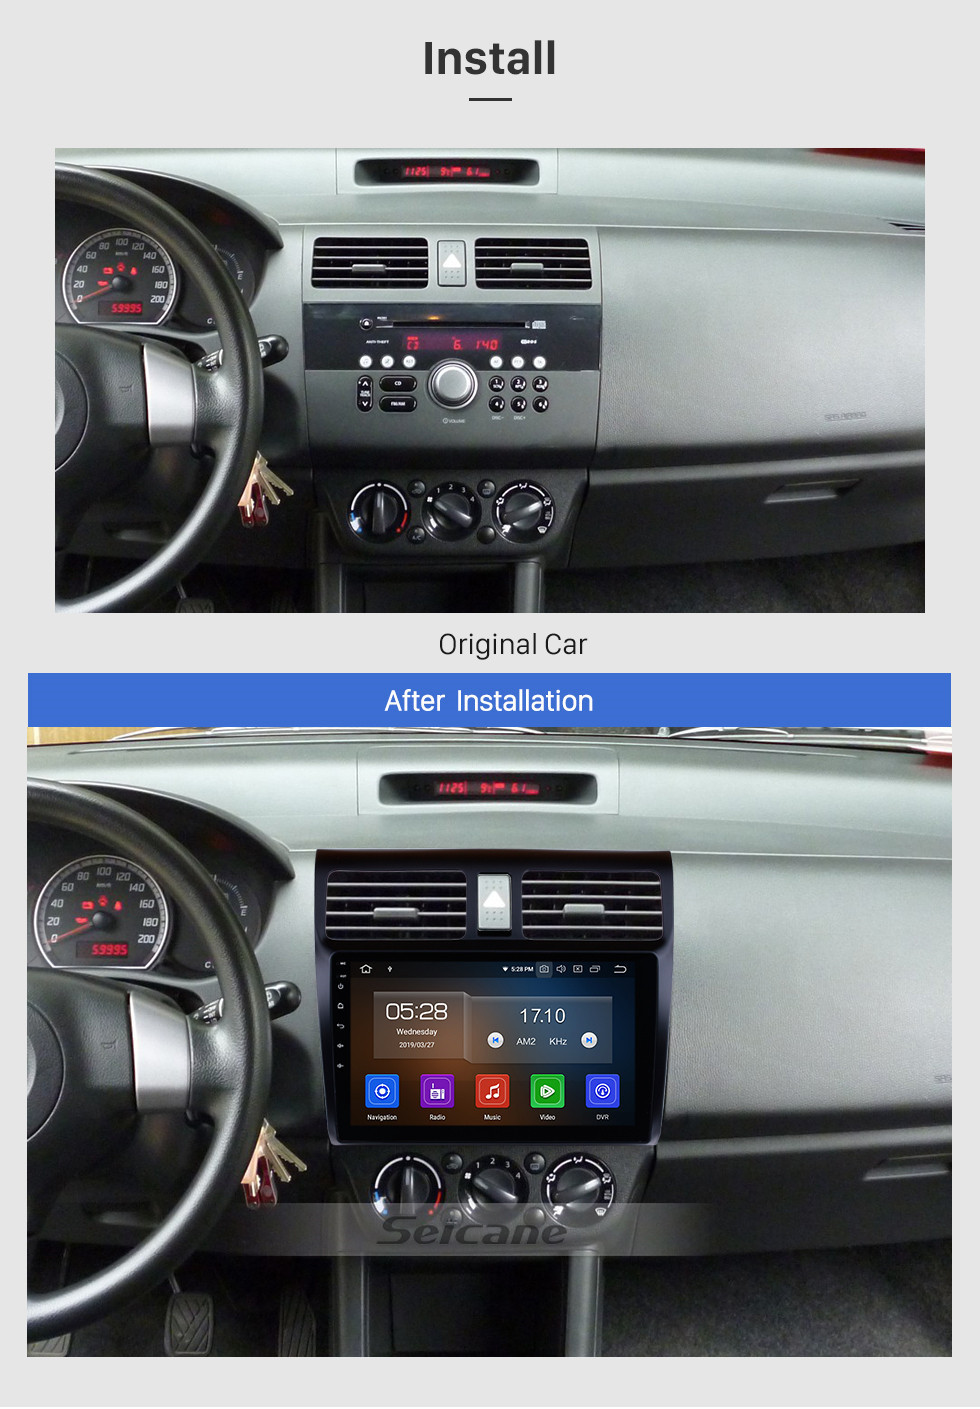 Seicane Aftermarket Radio 10.1 pulgadas Android 11.0 Navegación GPS para 2005-2010 SUZUKI SWIFT Mirror Link Bluetooth WiFi Soporte de audio Cámara de vista trasera 1080P Video DVR DAB + Reproductor de DVD